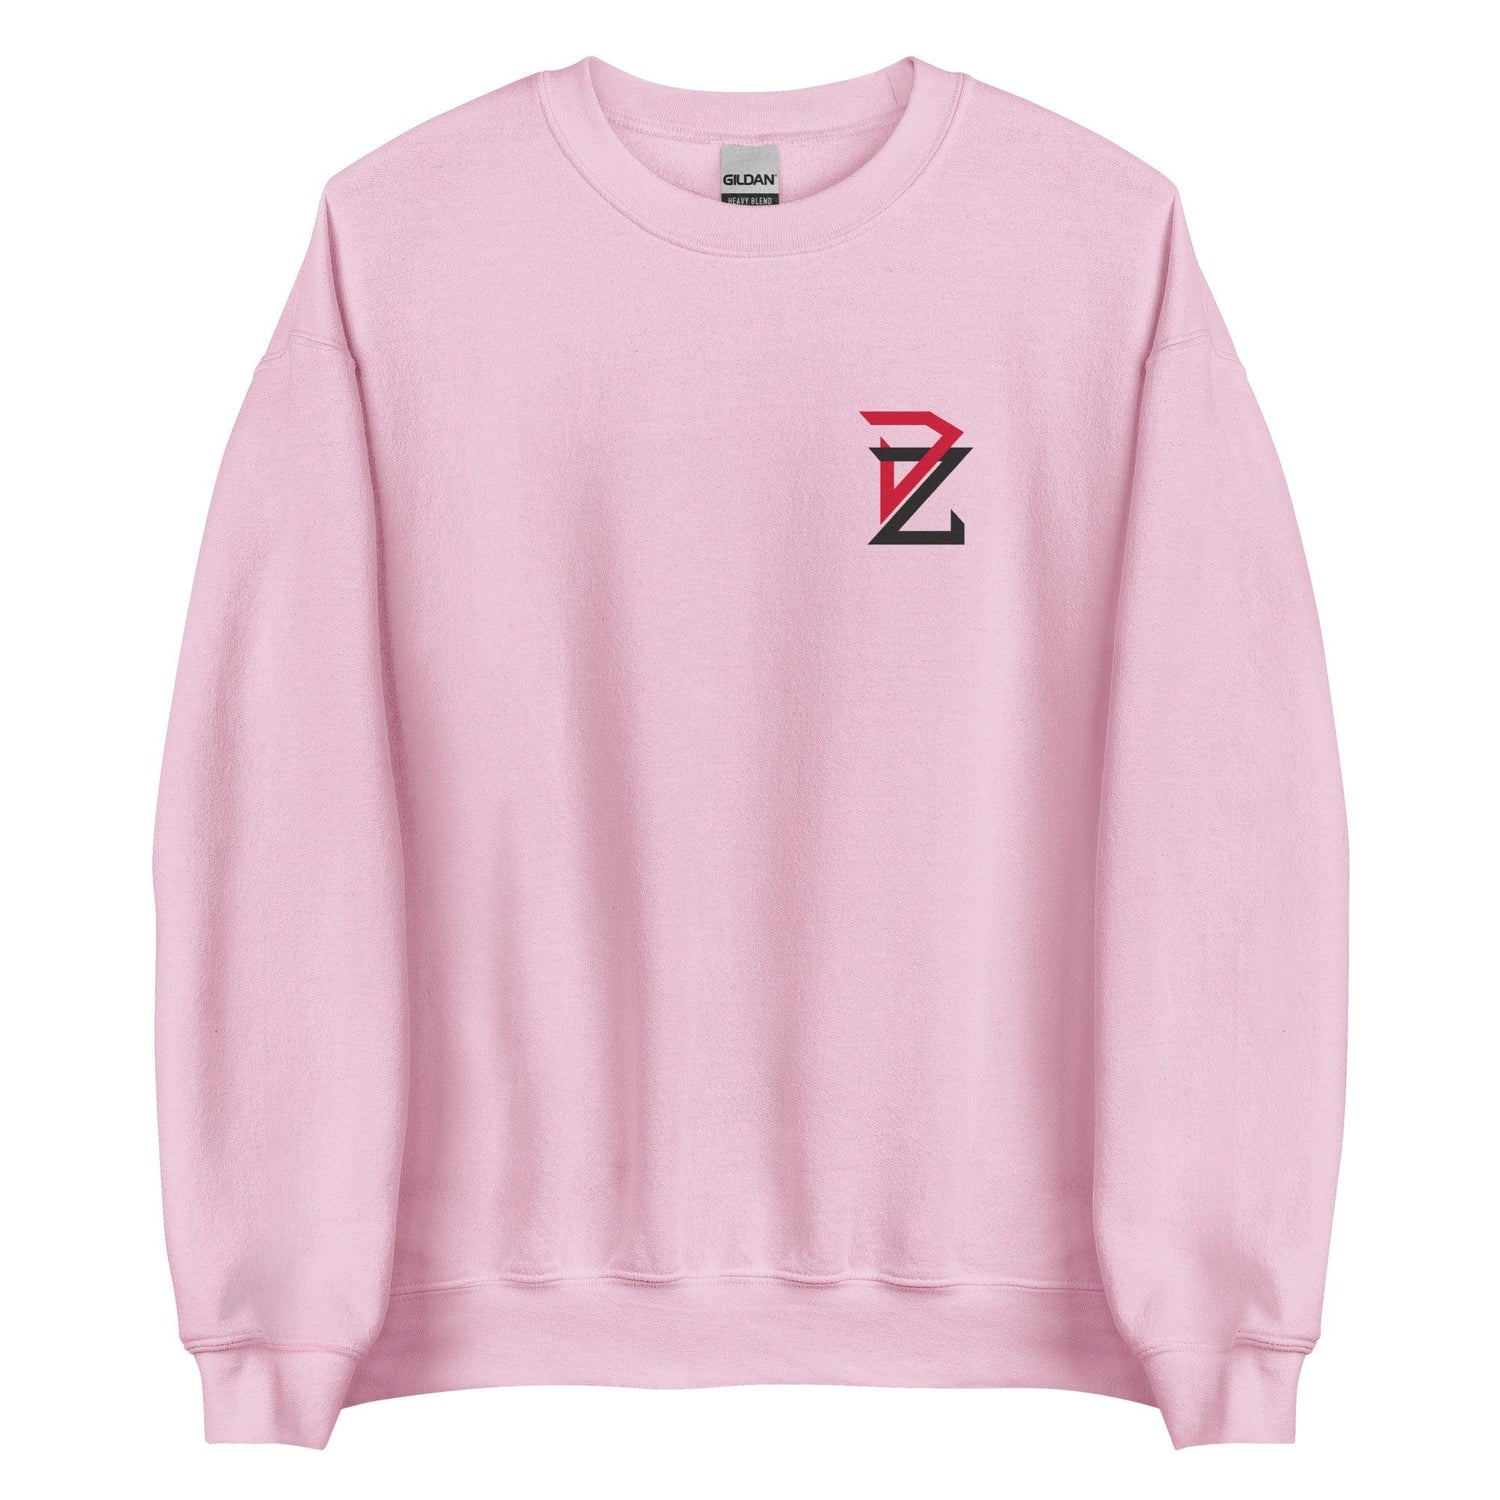 Donovan Zsak "Essential" Sweatshirt - Fan Arch